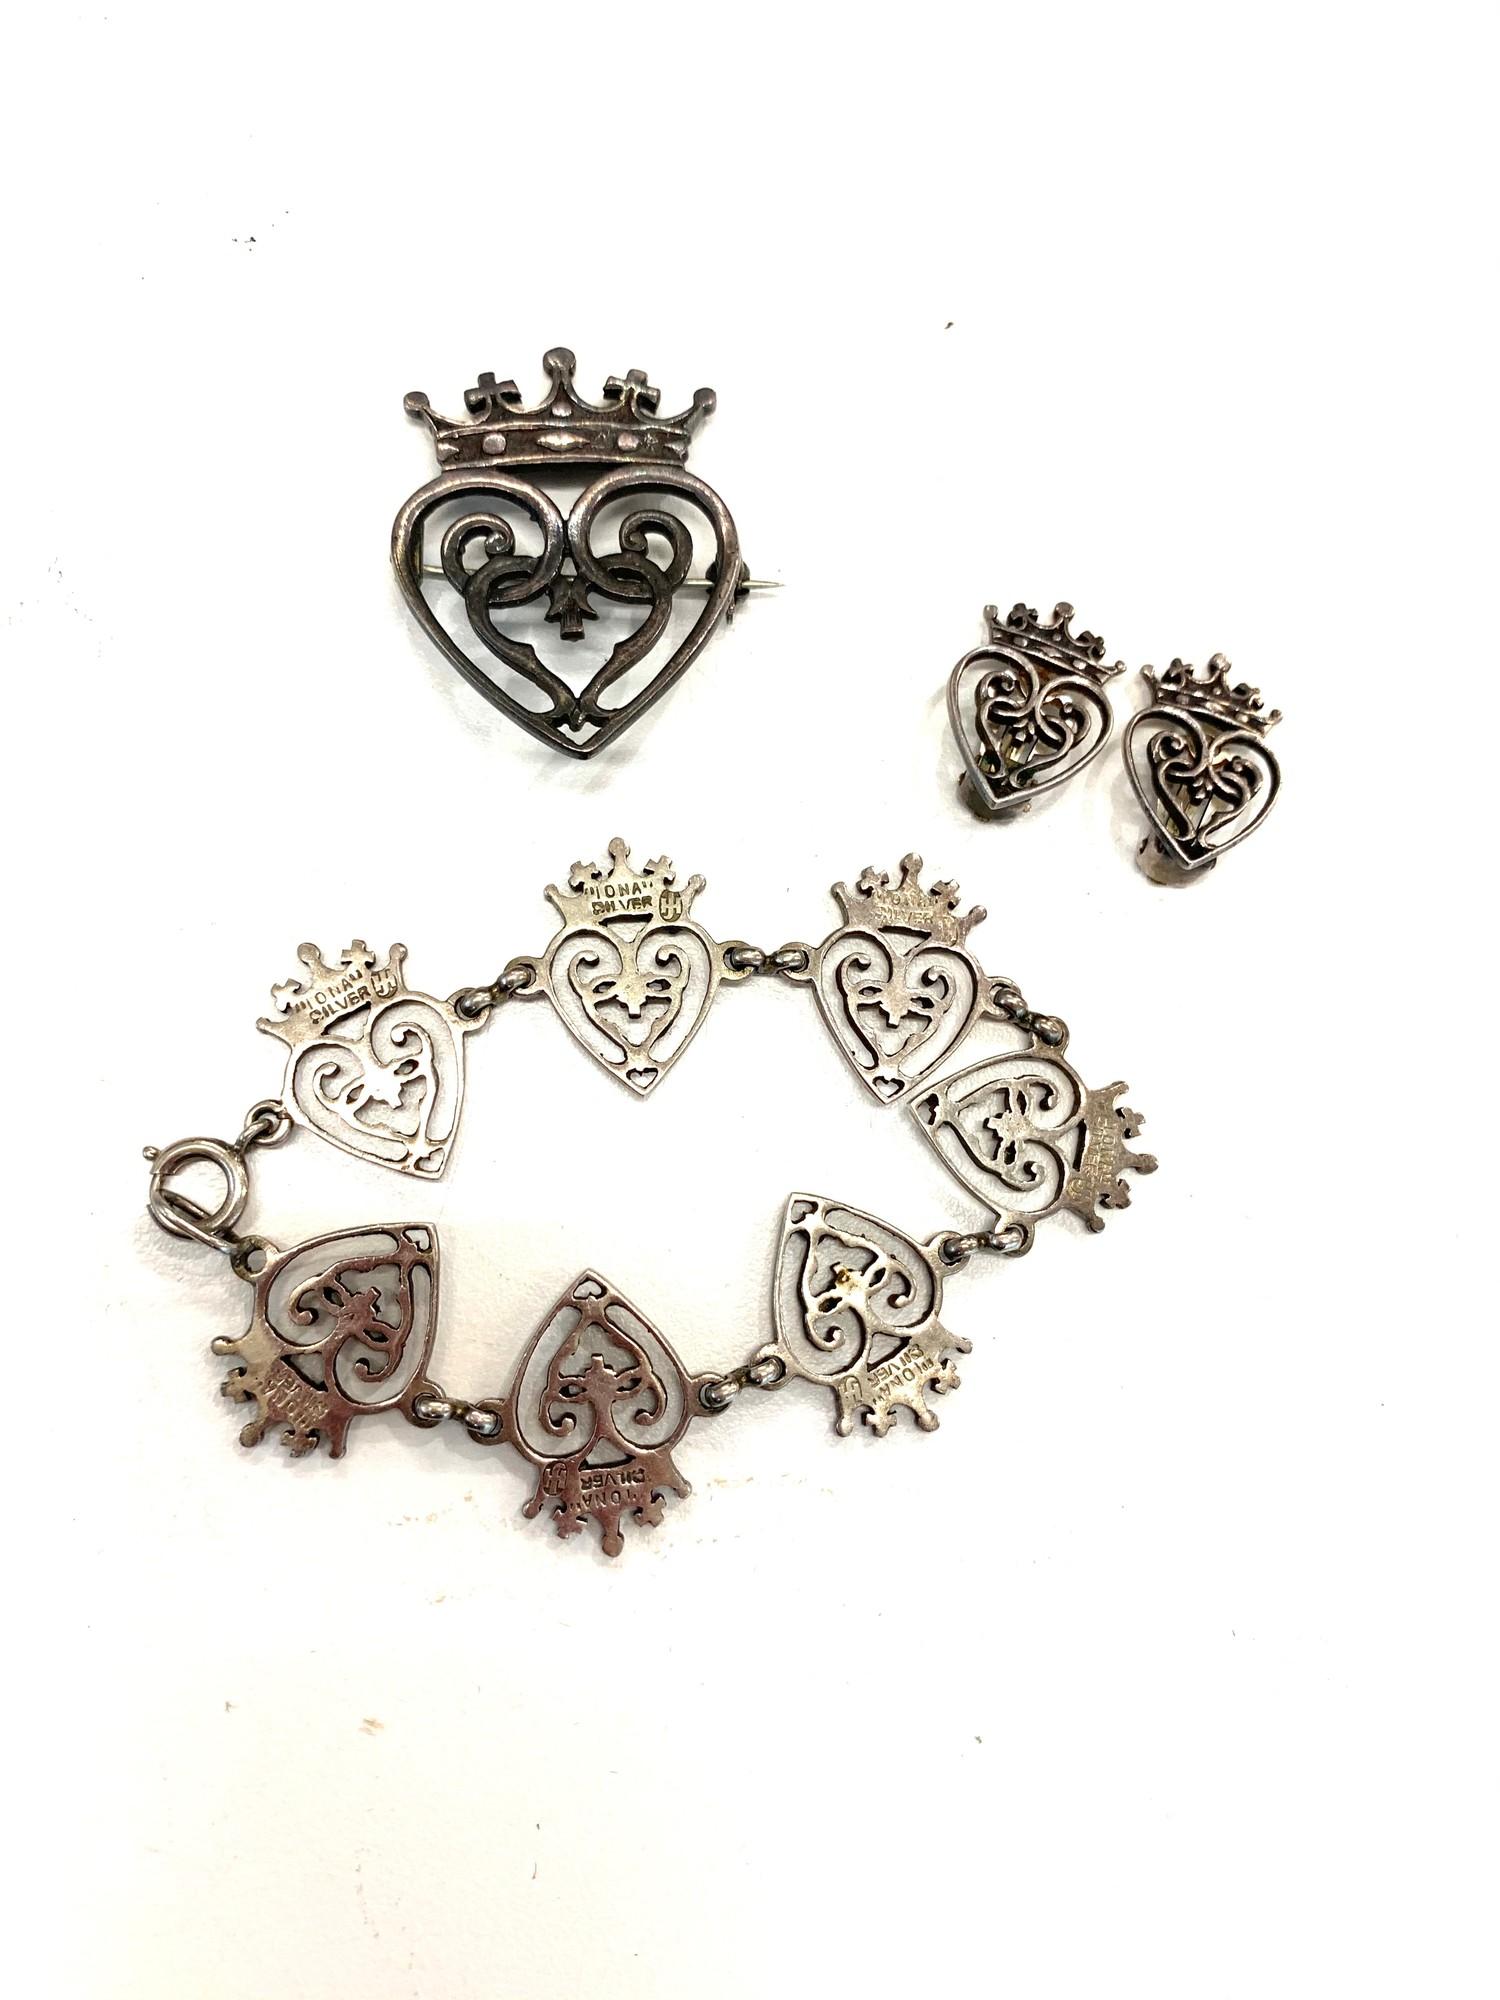 Vintage silver Iona silver brooch earrings and bracelet by john hart